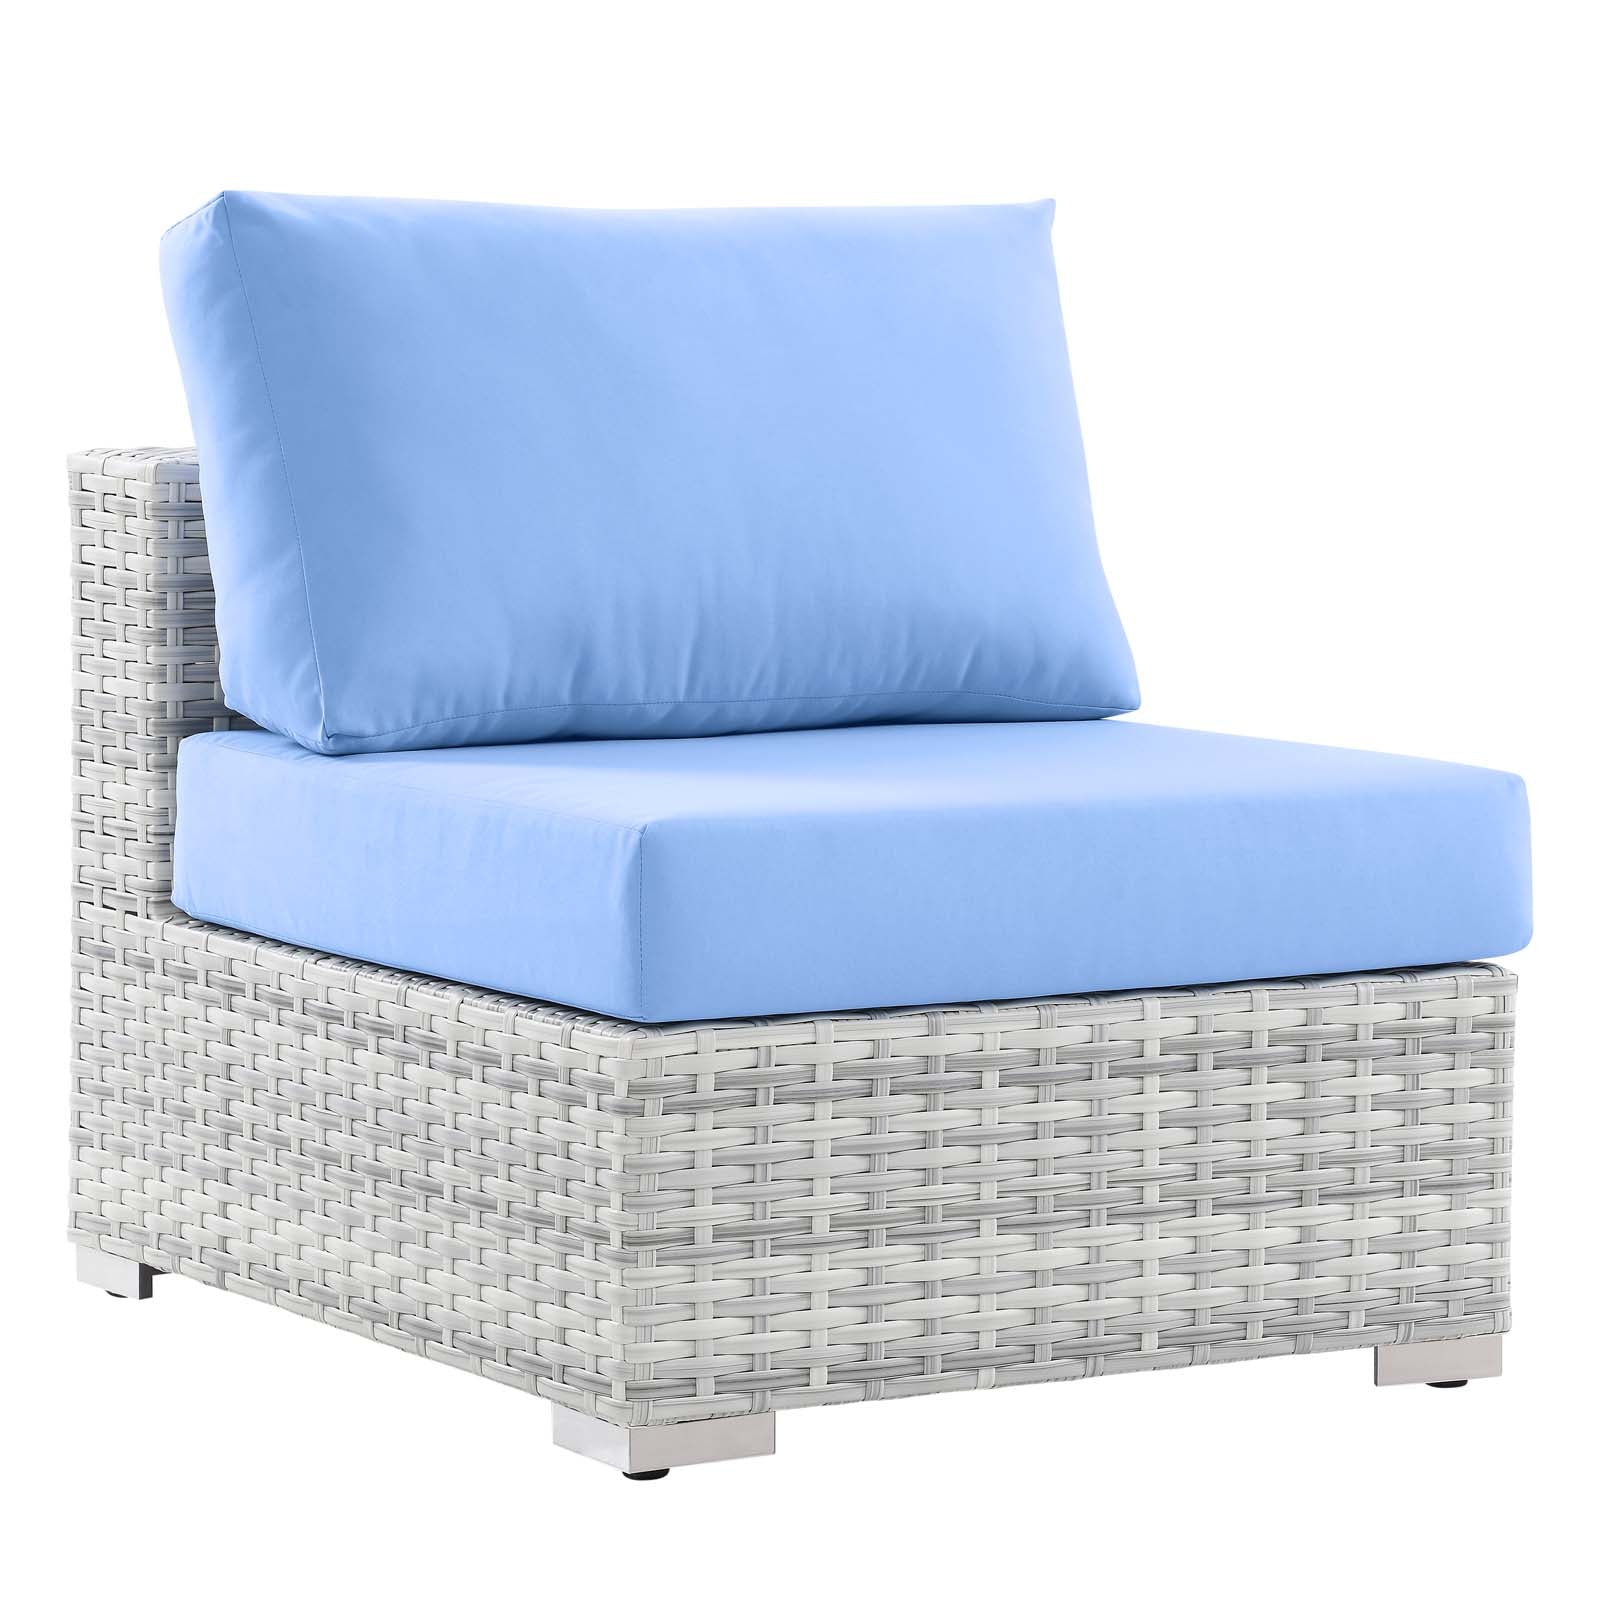 Modway - Convene Outdoor Patio Armless Chair - EEI-4298